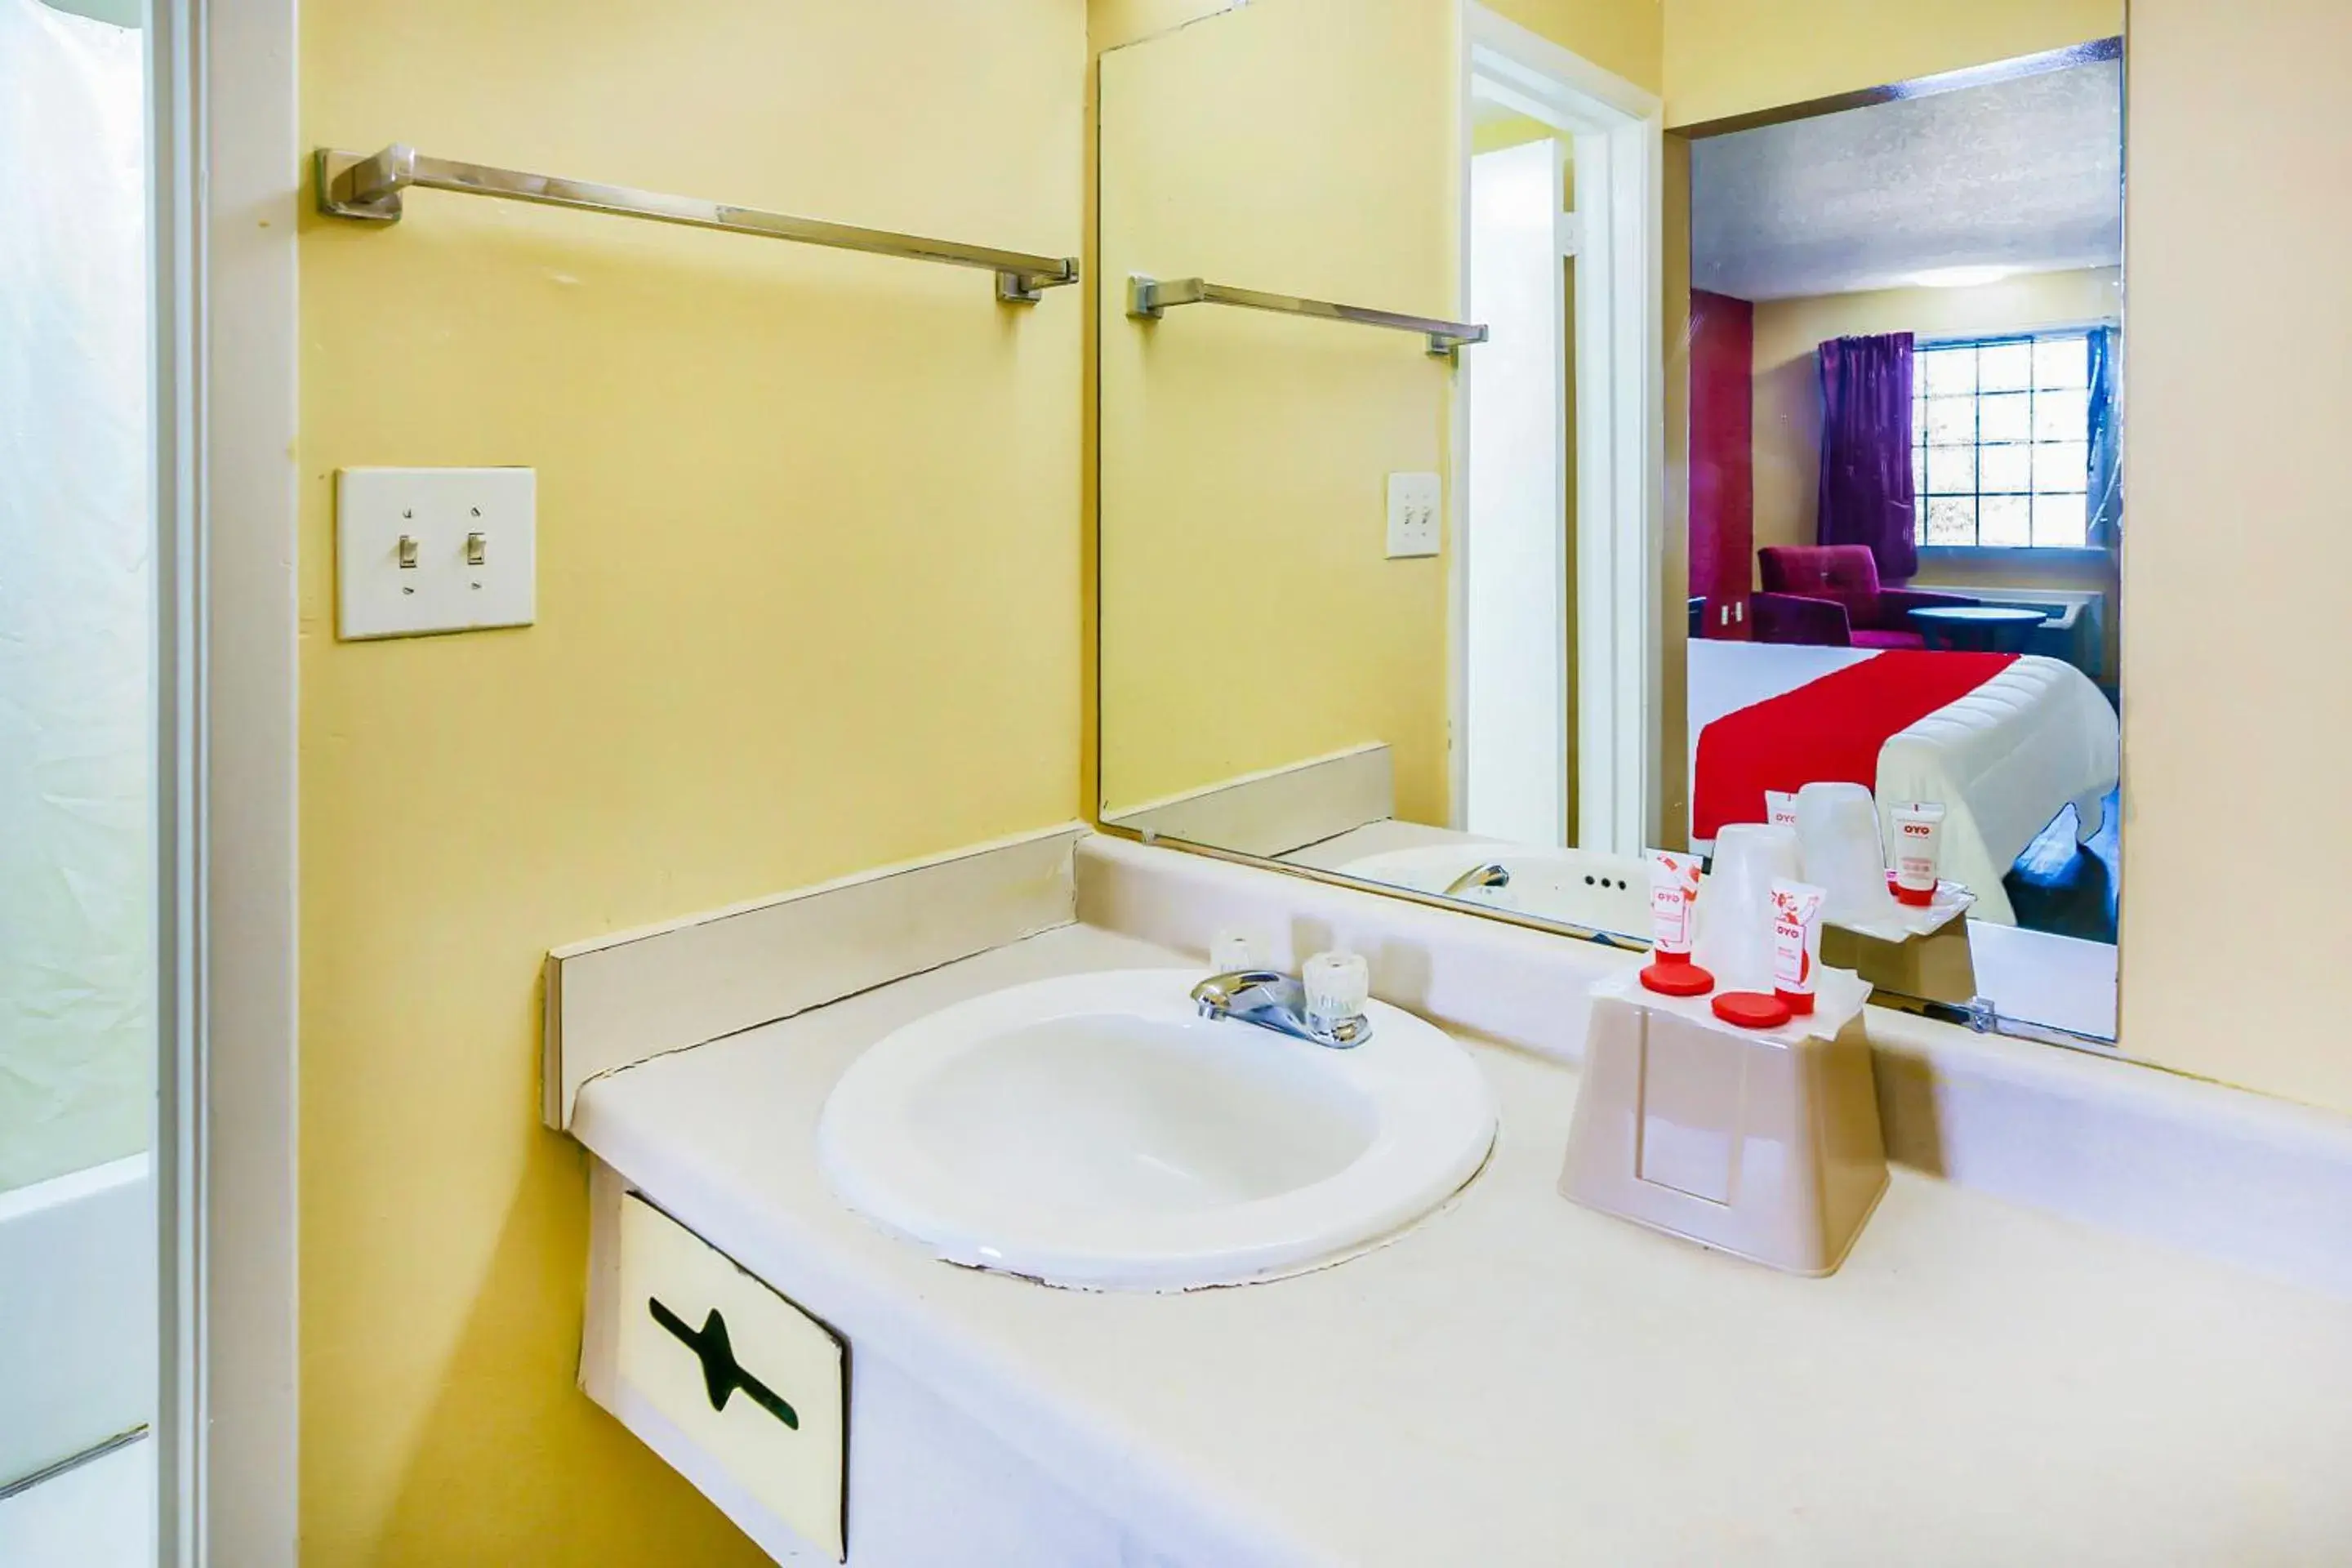 Bathroom in OYO Hotel Jackson South I-55